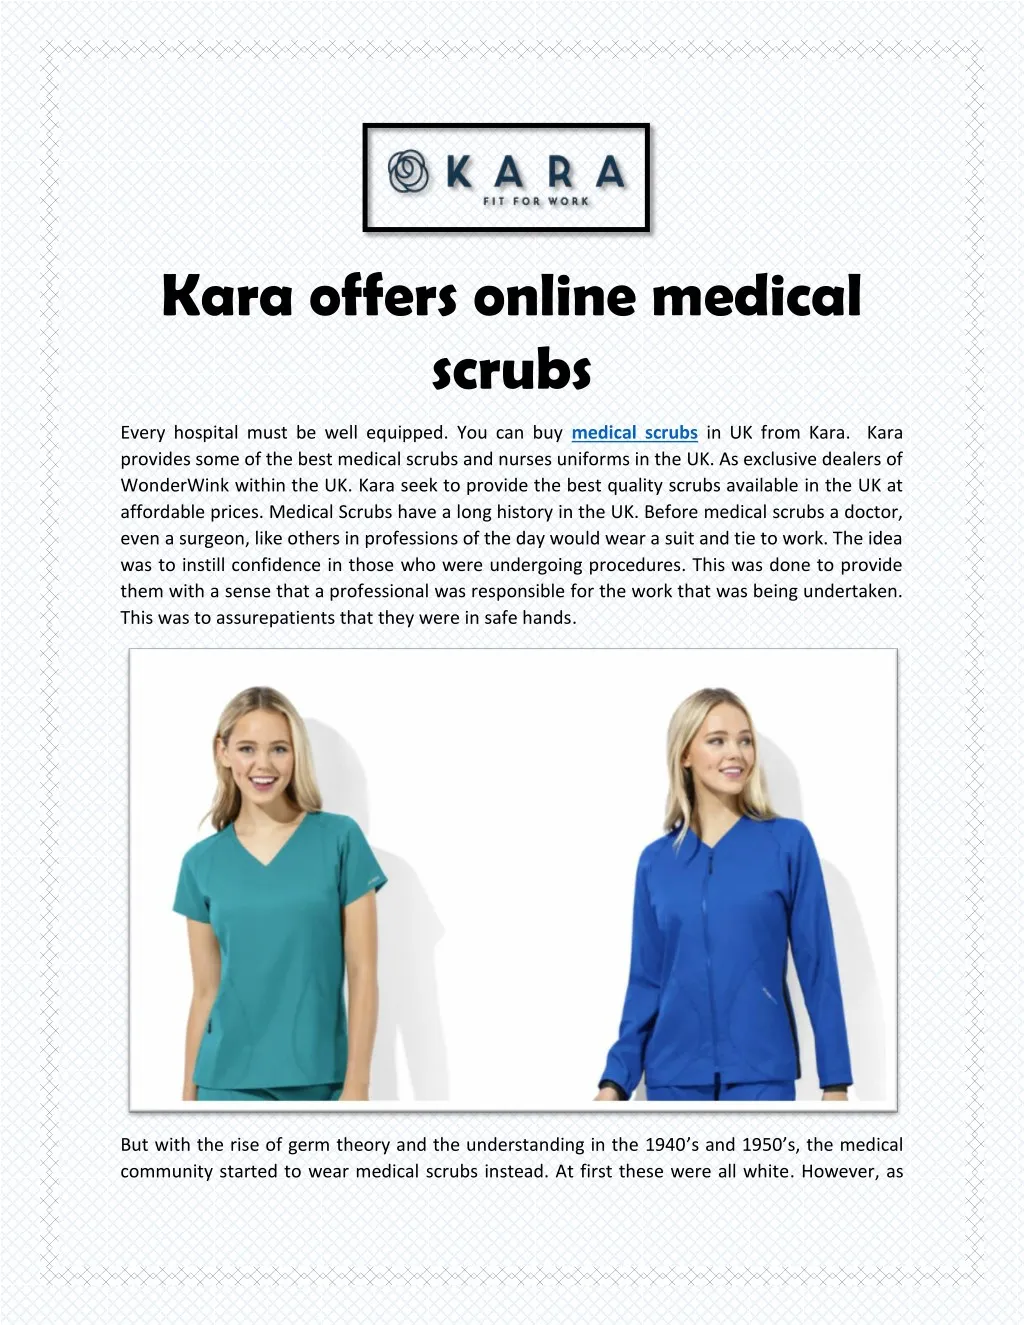 kara offers online medical scrubs